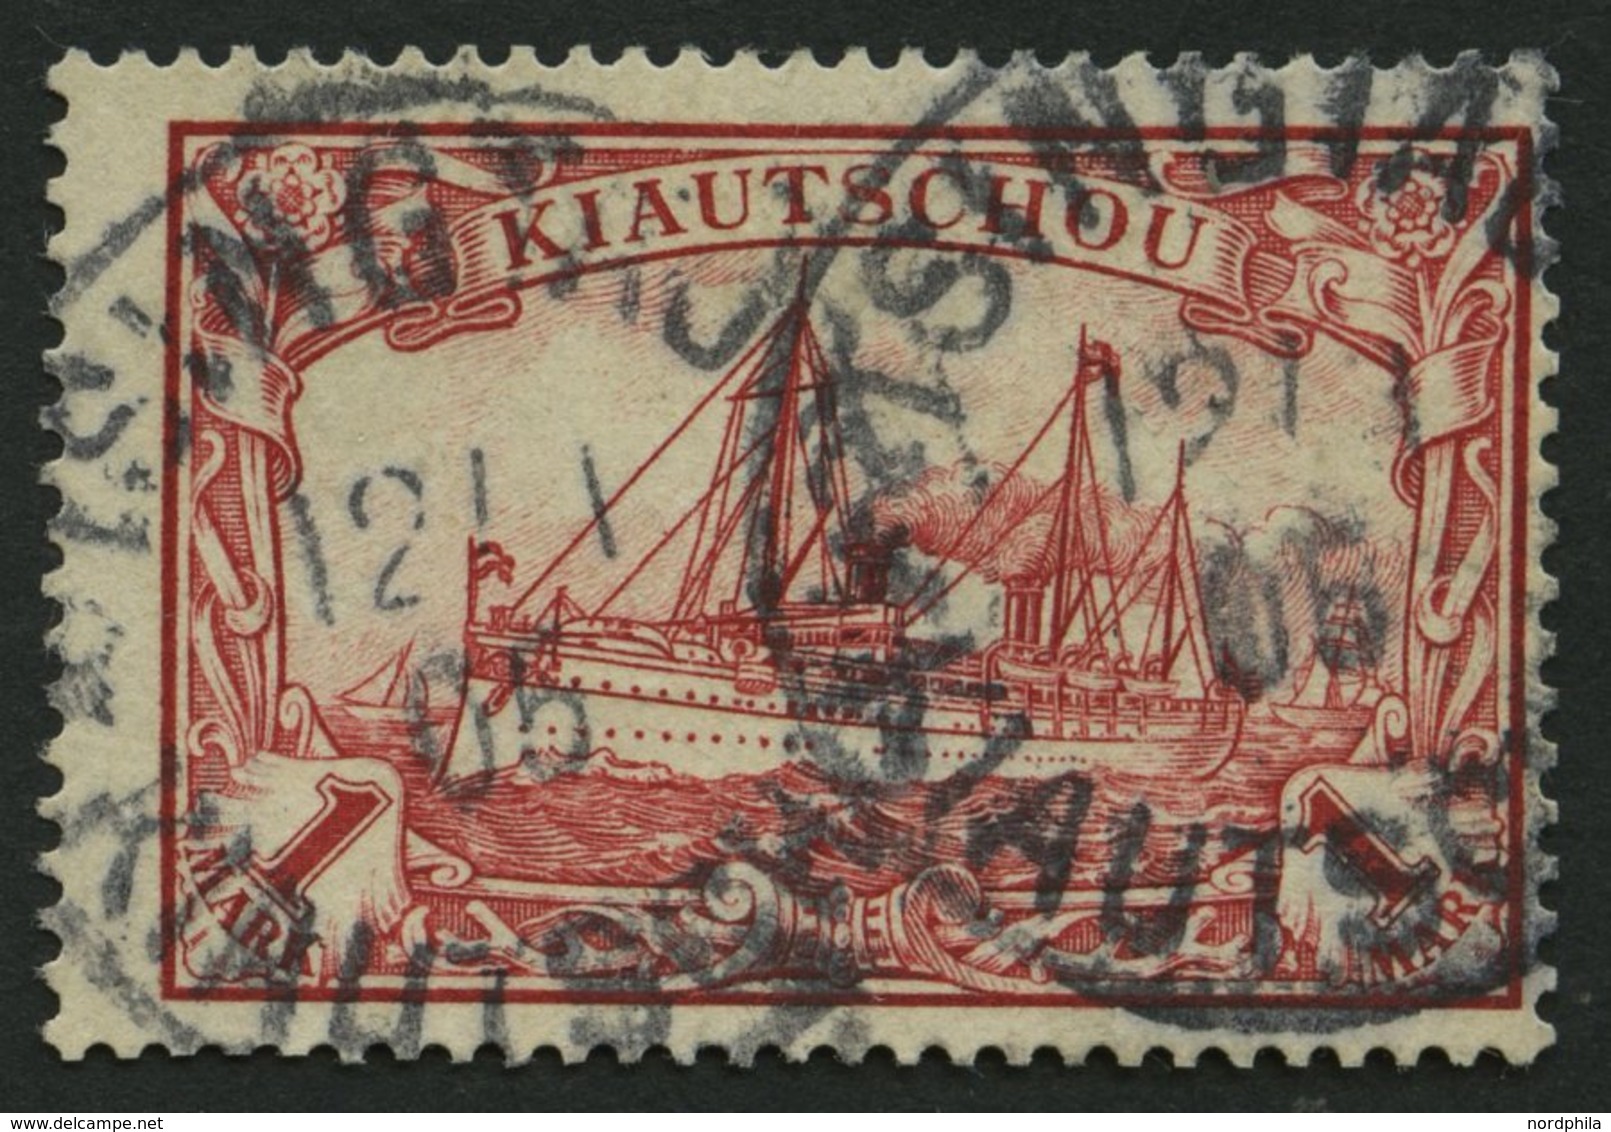 KIAUTSCHOU 14 O, 1901, 1 M. Rot, Etwas Dezentriert, Pracht, Mi. 110.- - Kiauchau